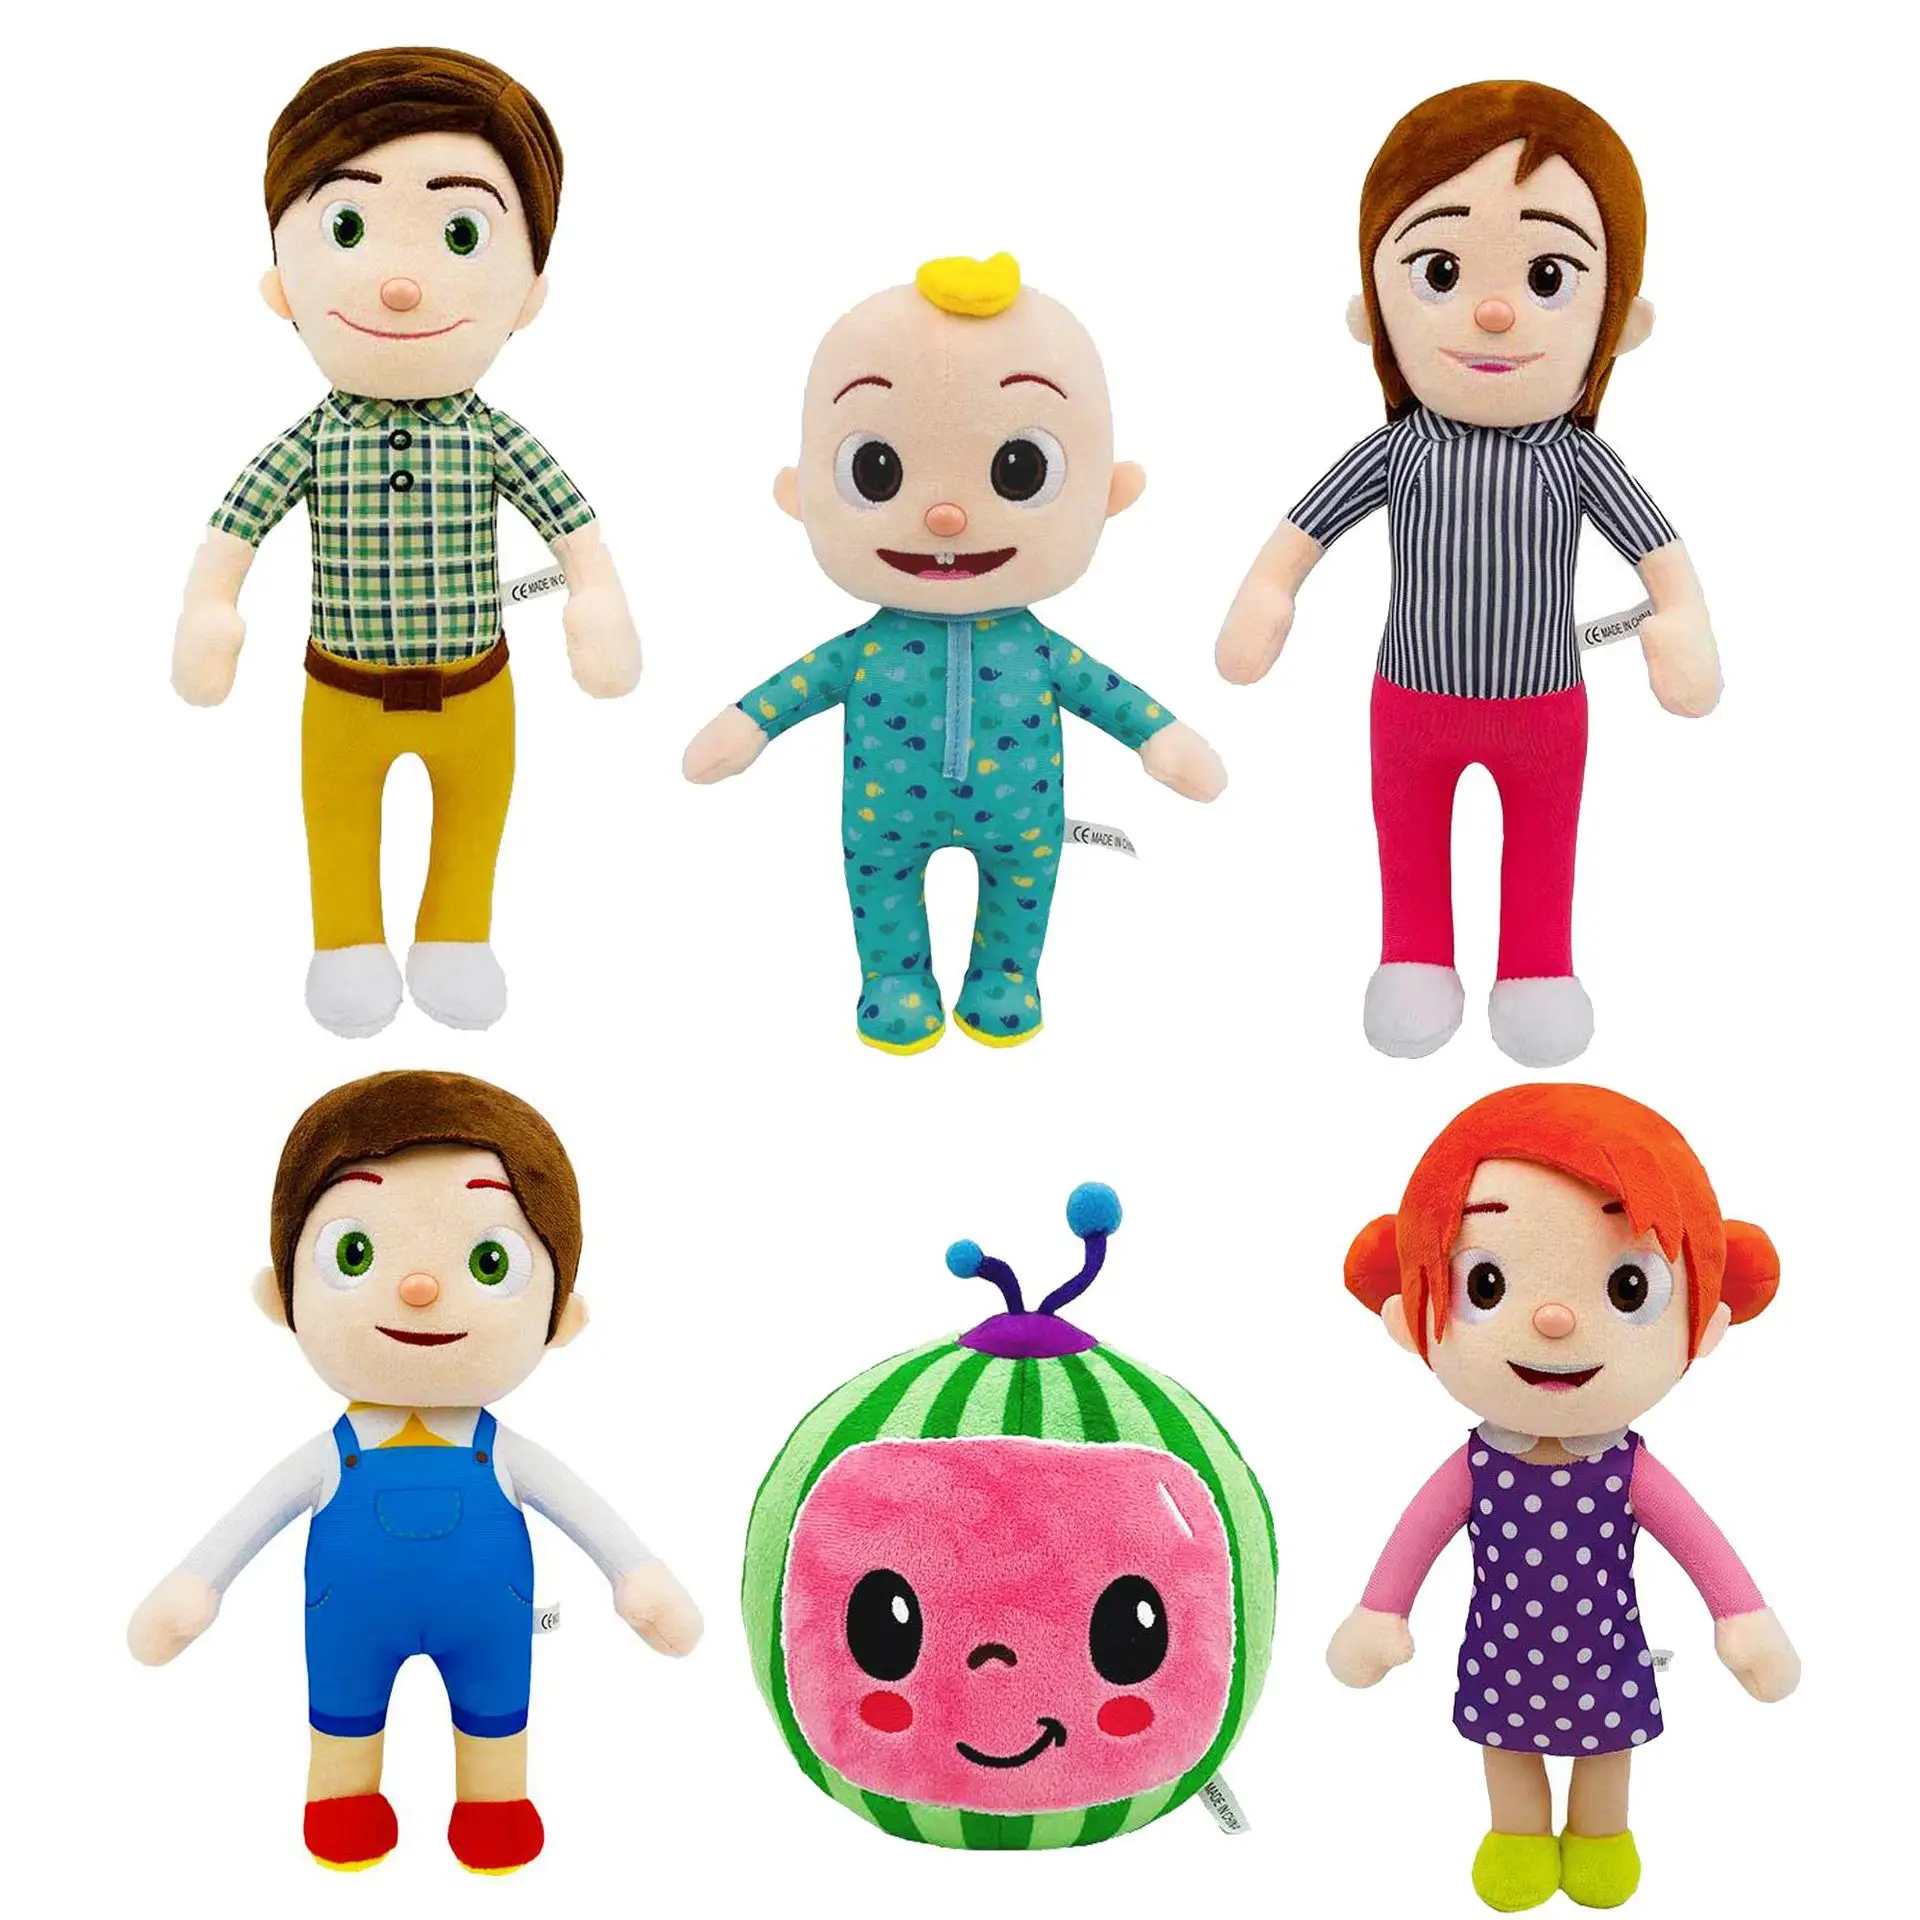 

6 шт./лот Cocomelon JJ брата и сестры, папа и мама, а так же плюшевые игрушки куклы Cocomelon плюшевые мягкие игрушки для детей, подарок